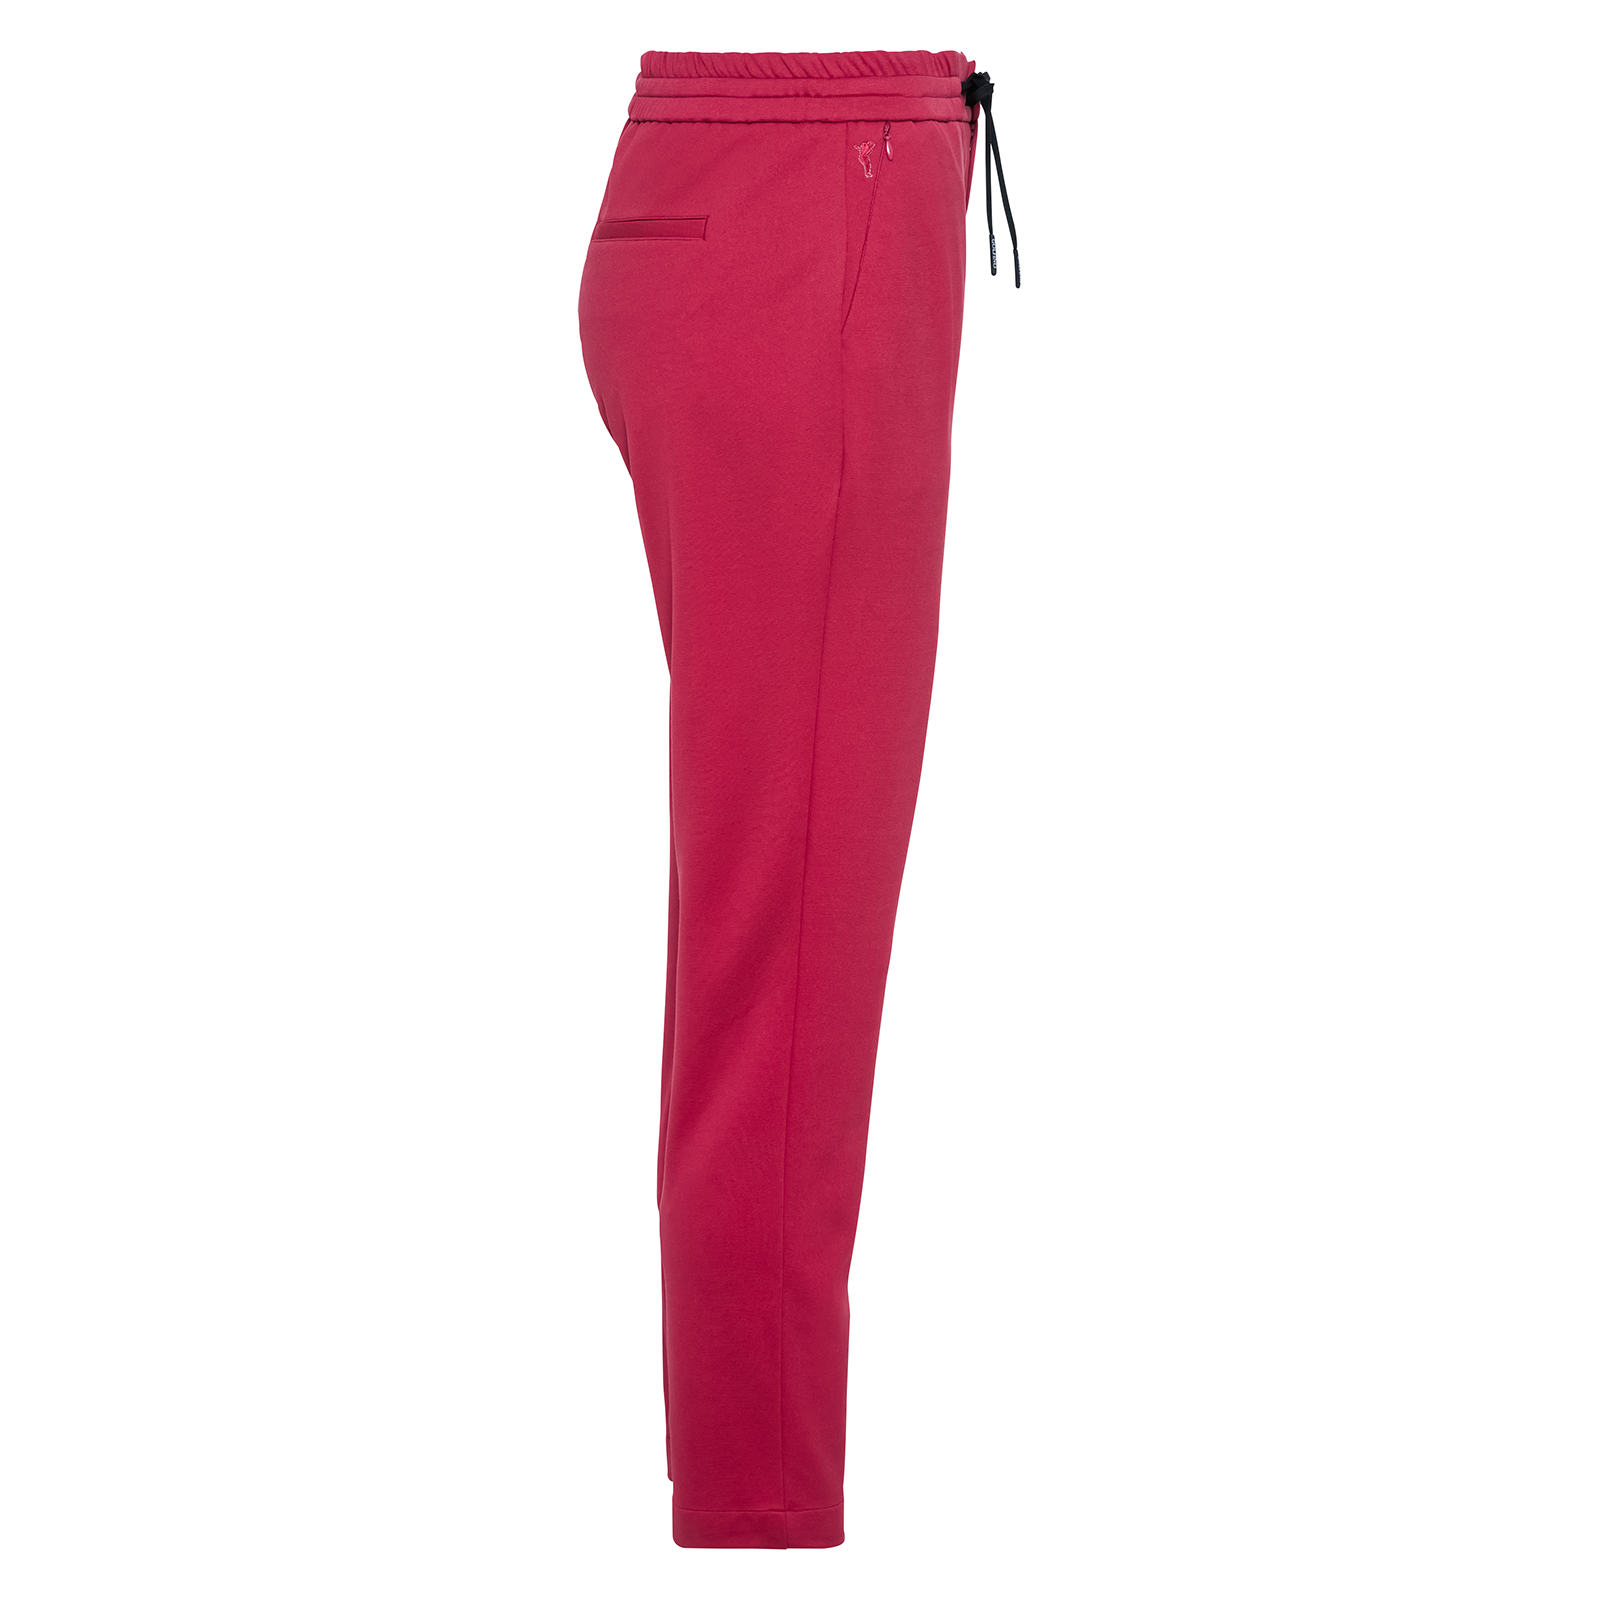 Pantalones 7/8 especialmente elásticos y con un atractivo diseño para mujer